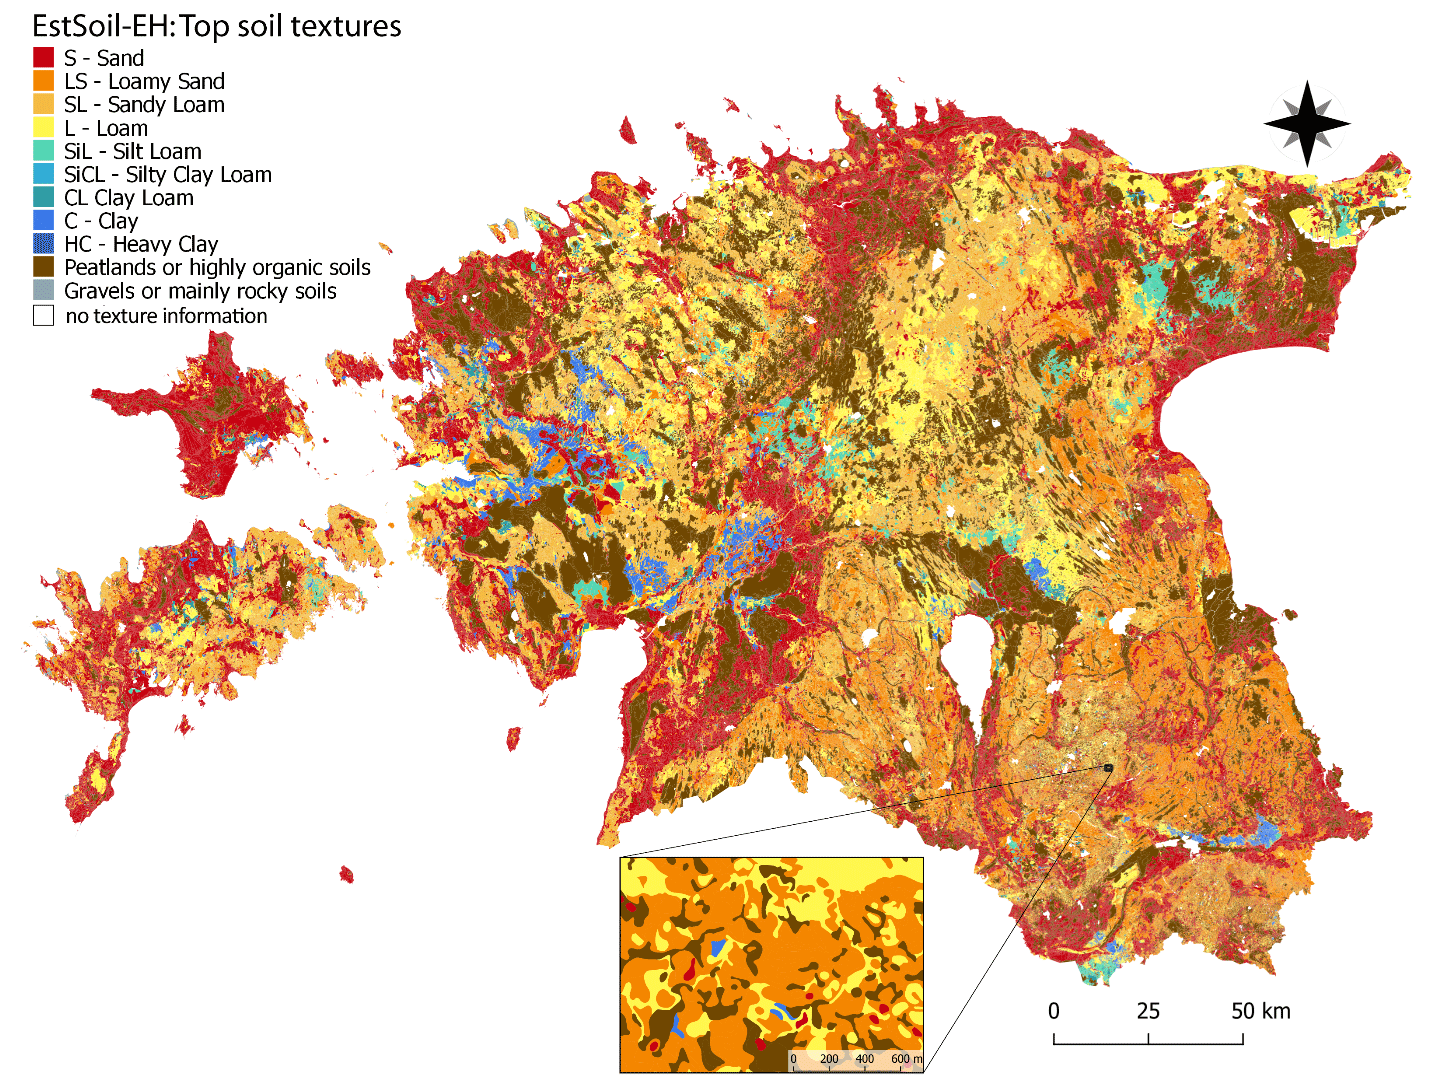 ESTSOIL map